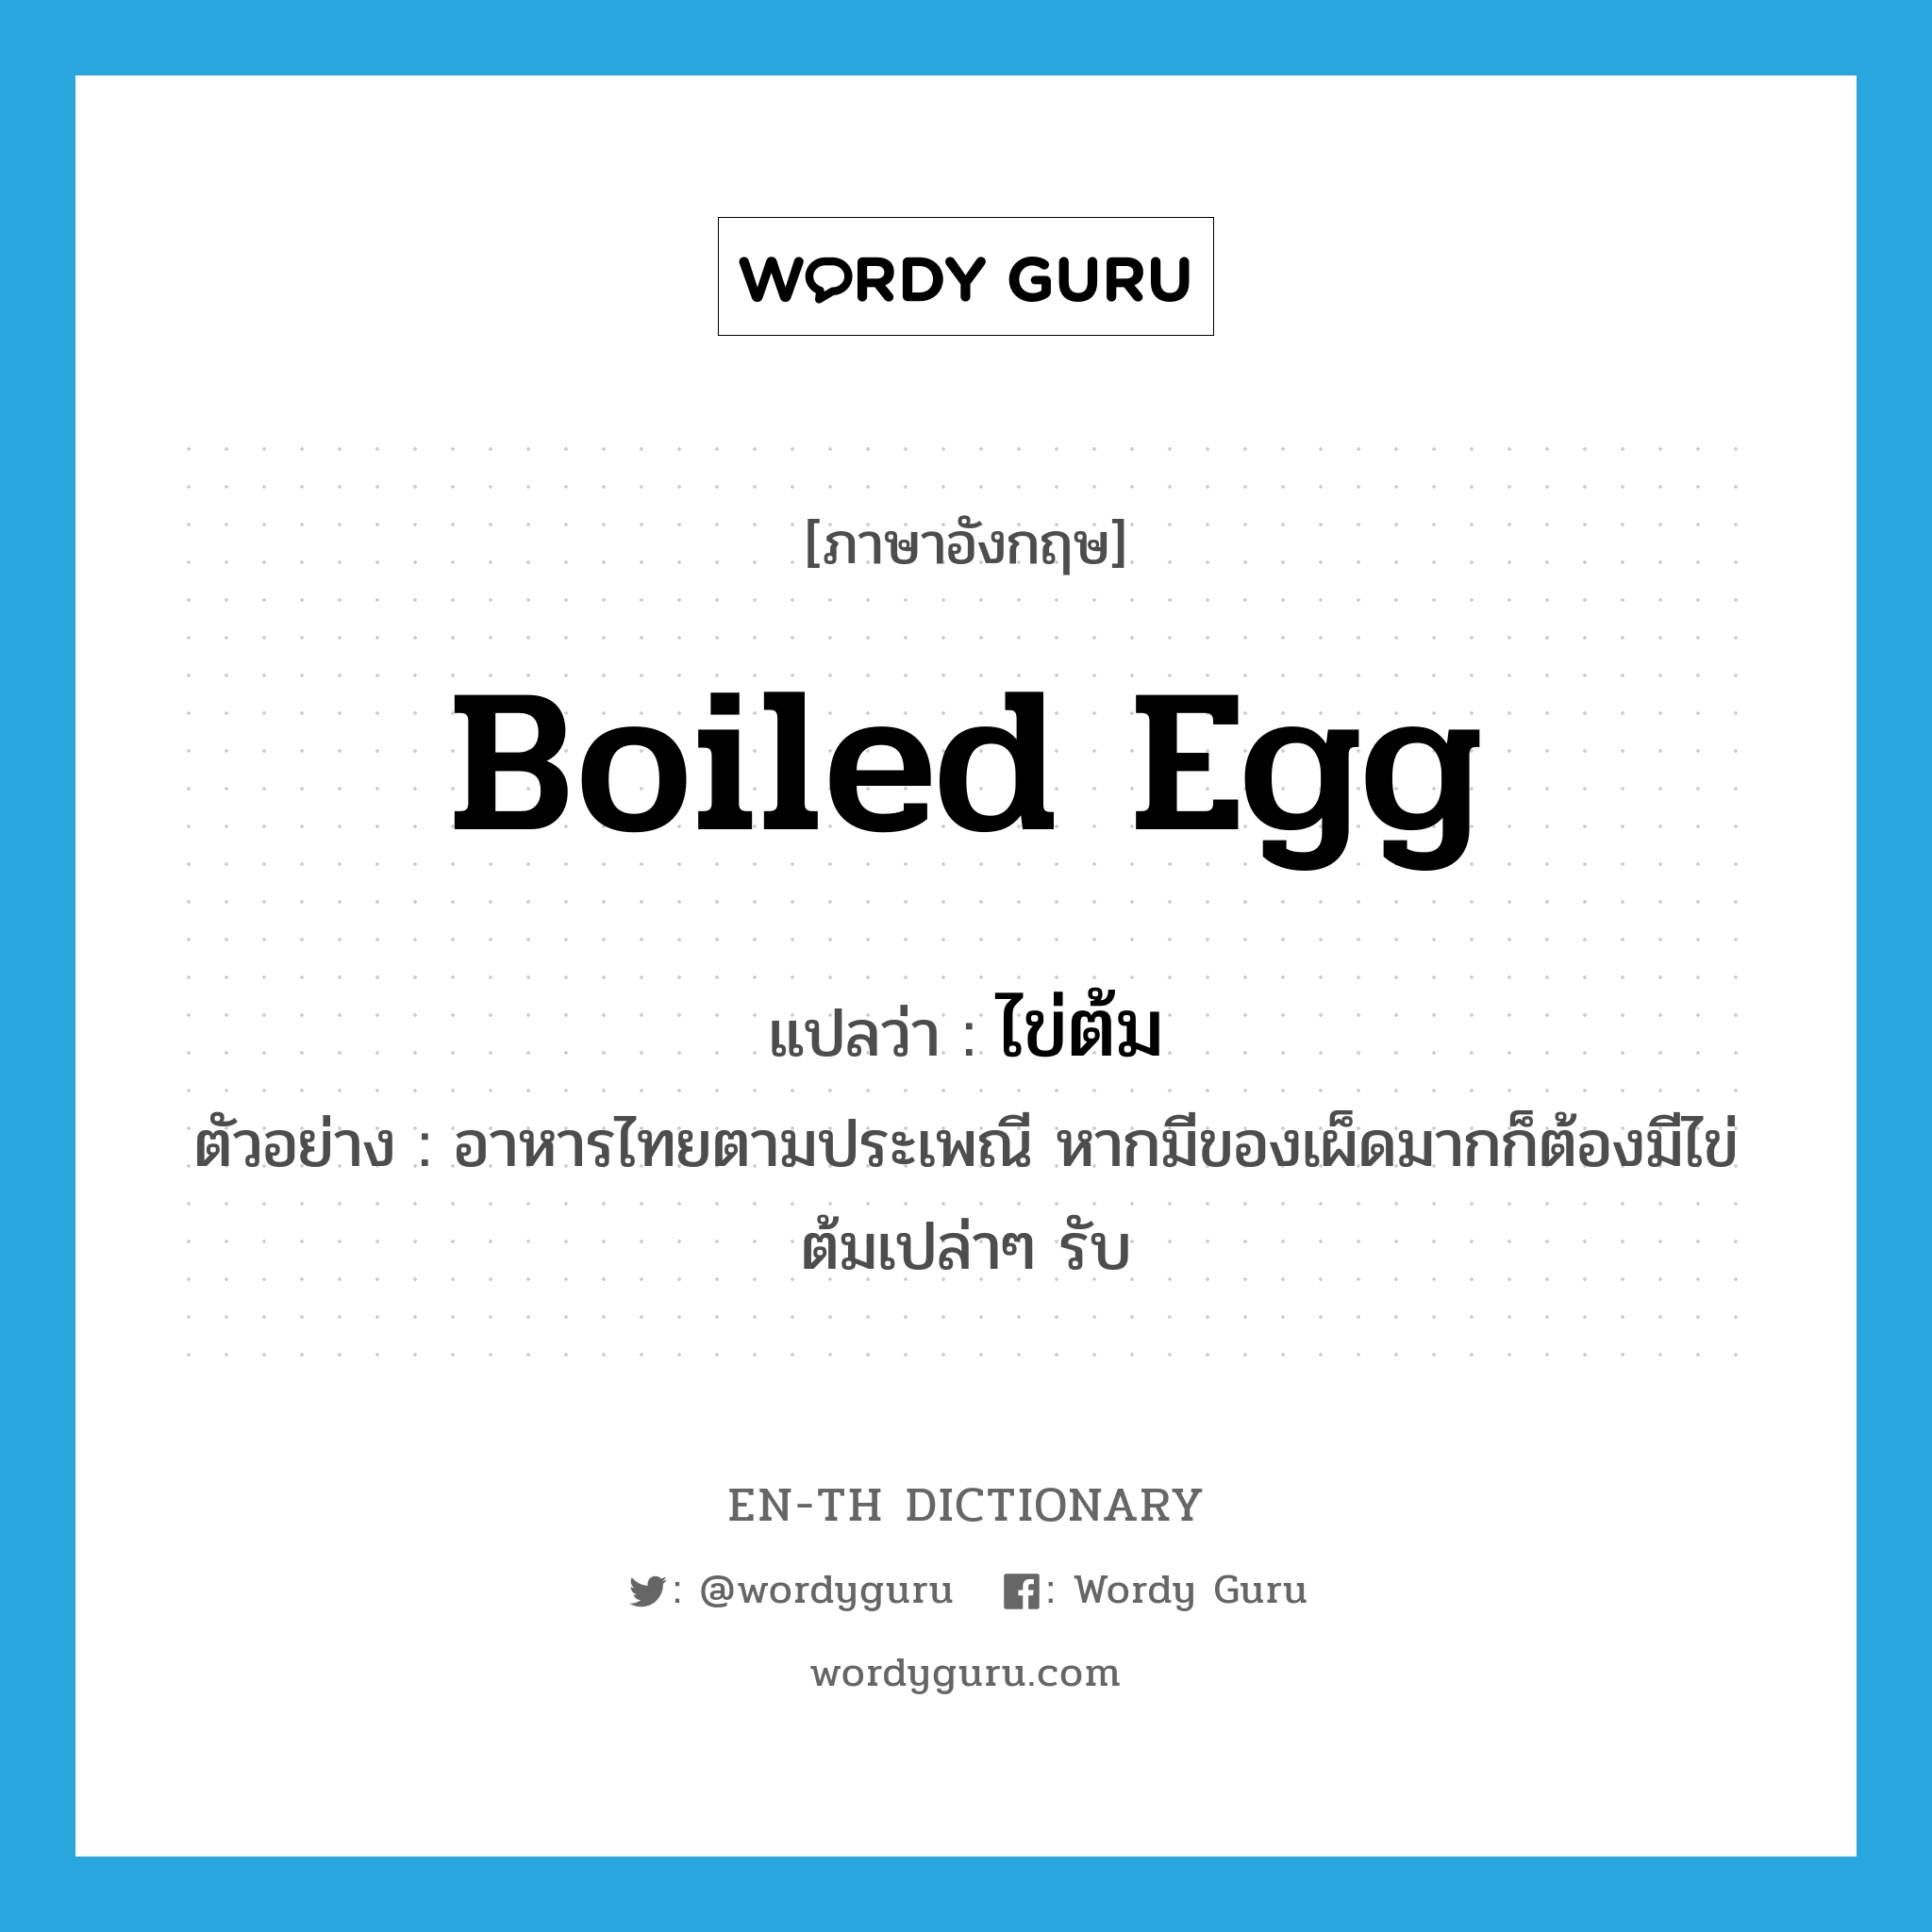 boiled egg แปลว่า?, คำศัพท์ภาษาอังกฤษ boiled egg แปลว่า ไข่ต้ม ประเภท N ตัวอย่าง อาหารไทยตามประเพณี หากมีของเผ็ดมากก็ต้องมีไข่ต้มเปล่าๆ รับ หมวด N